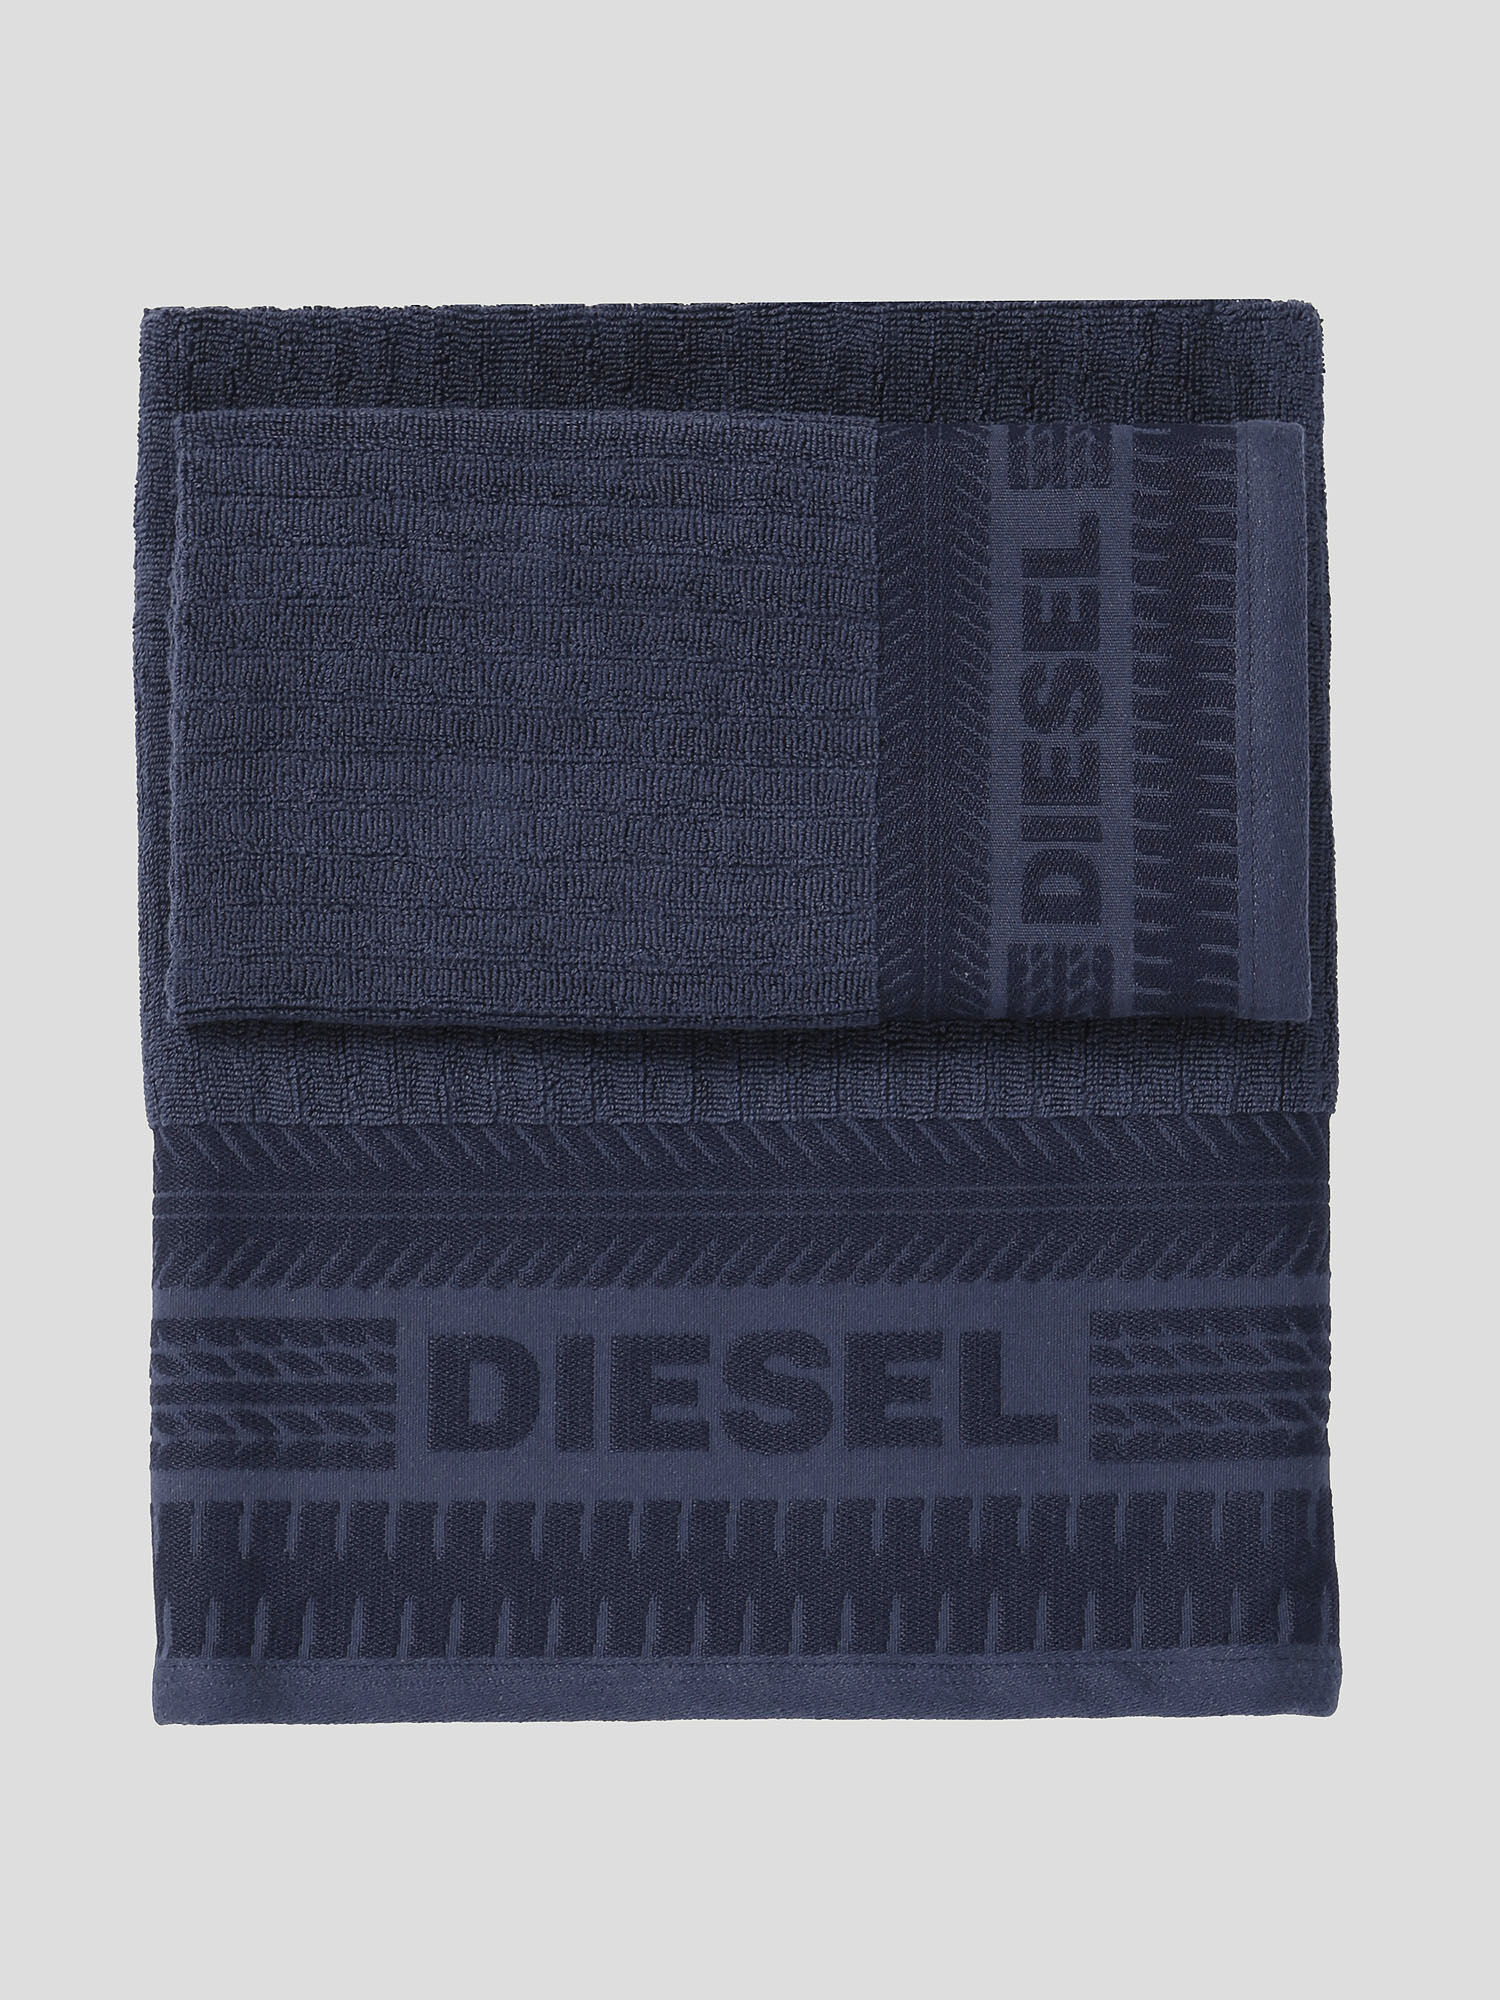 Diesel - 72327 SOLID, Blue - Image 1